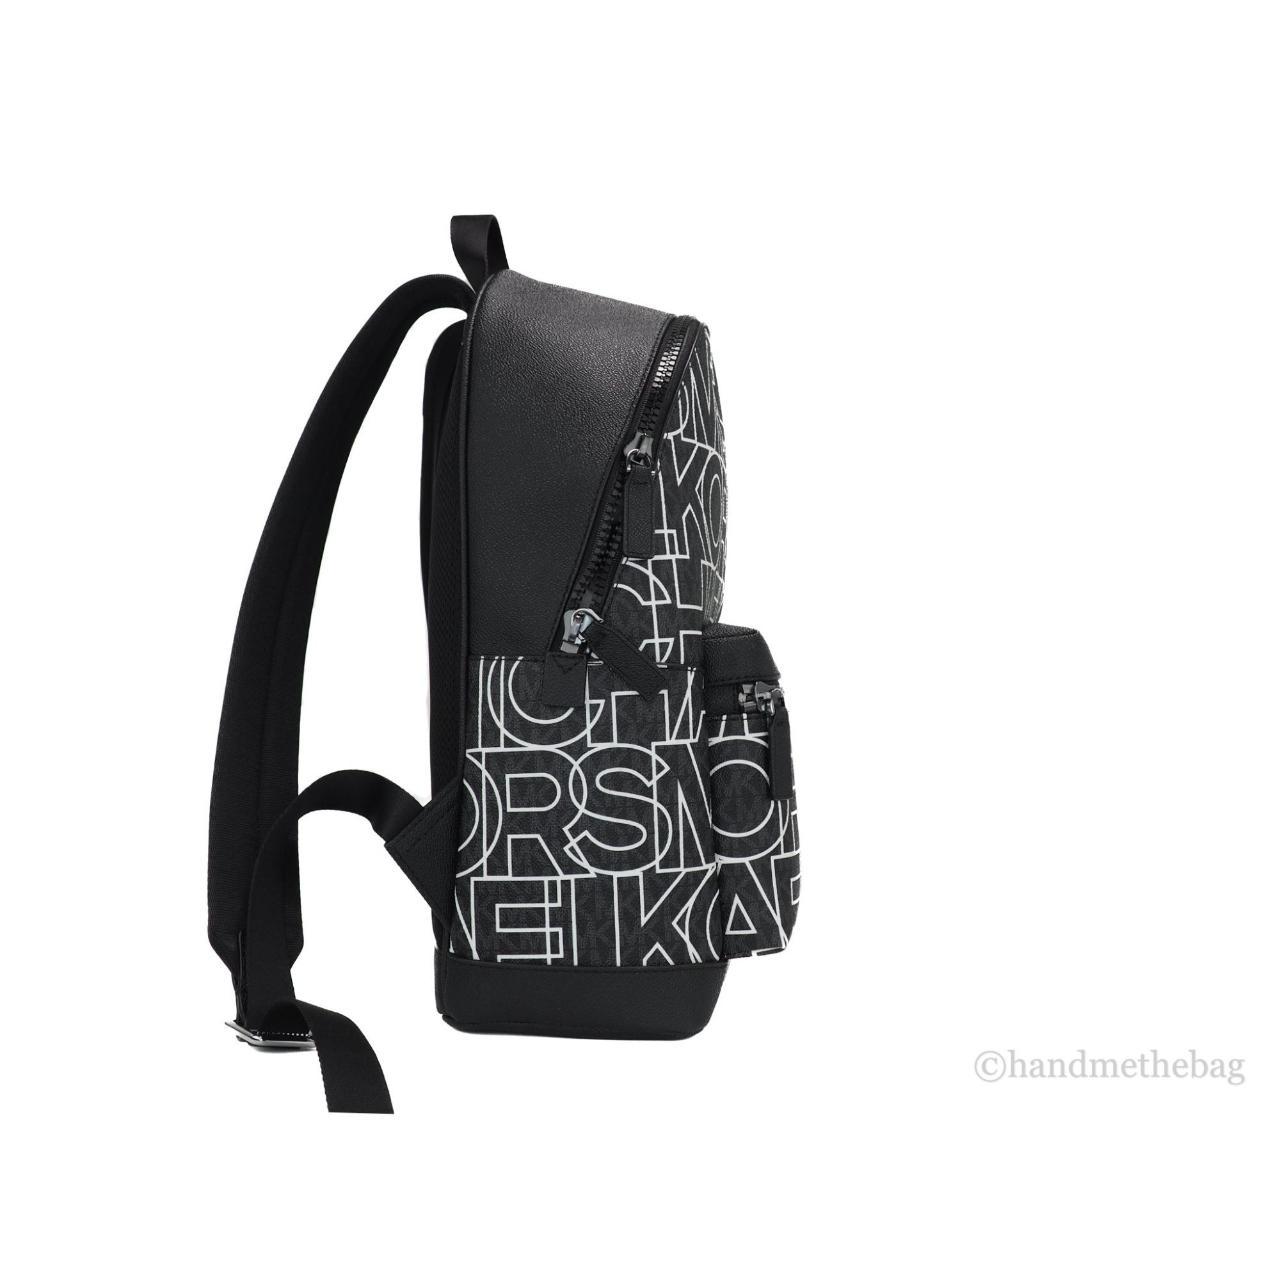 Michael Kors Cooper Large Graphic Logo Backpack Bag - Depop